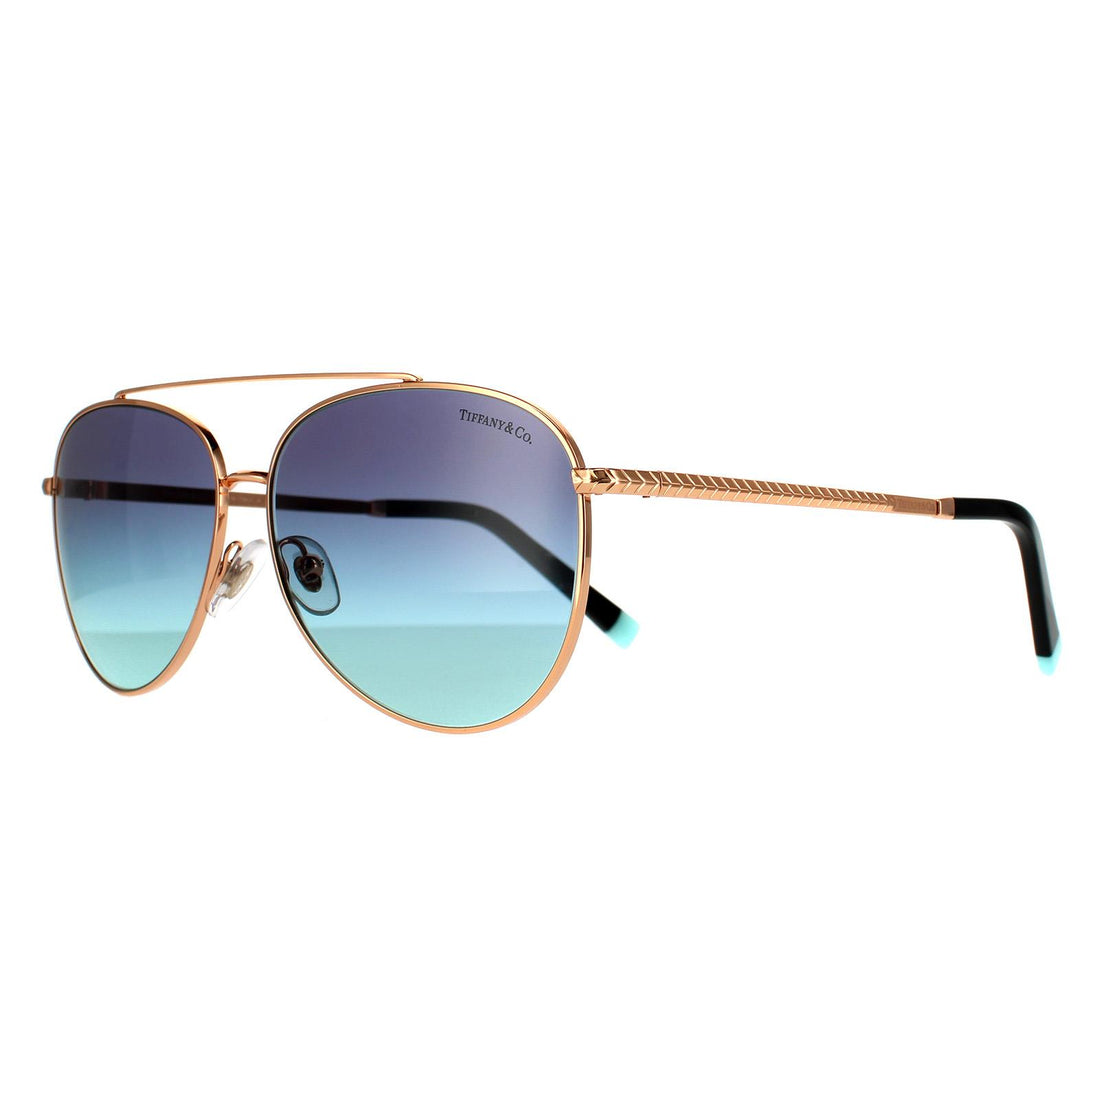 Tiffany & Co. Women's Sunglasses, TF3074 59 - Macy's